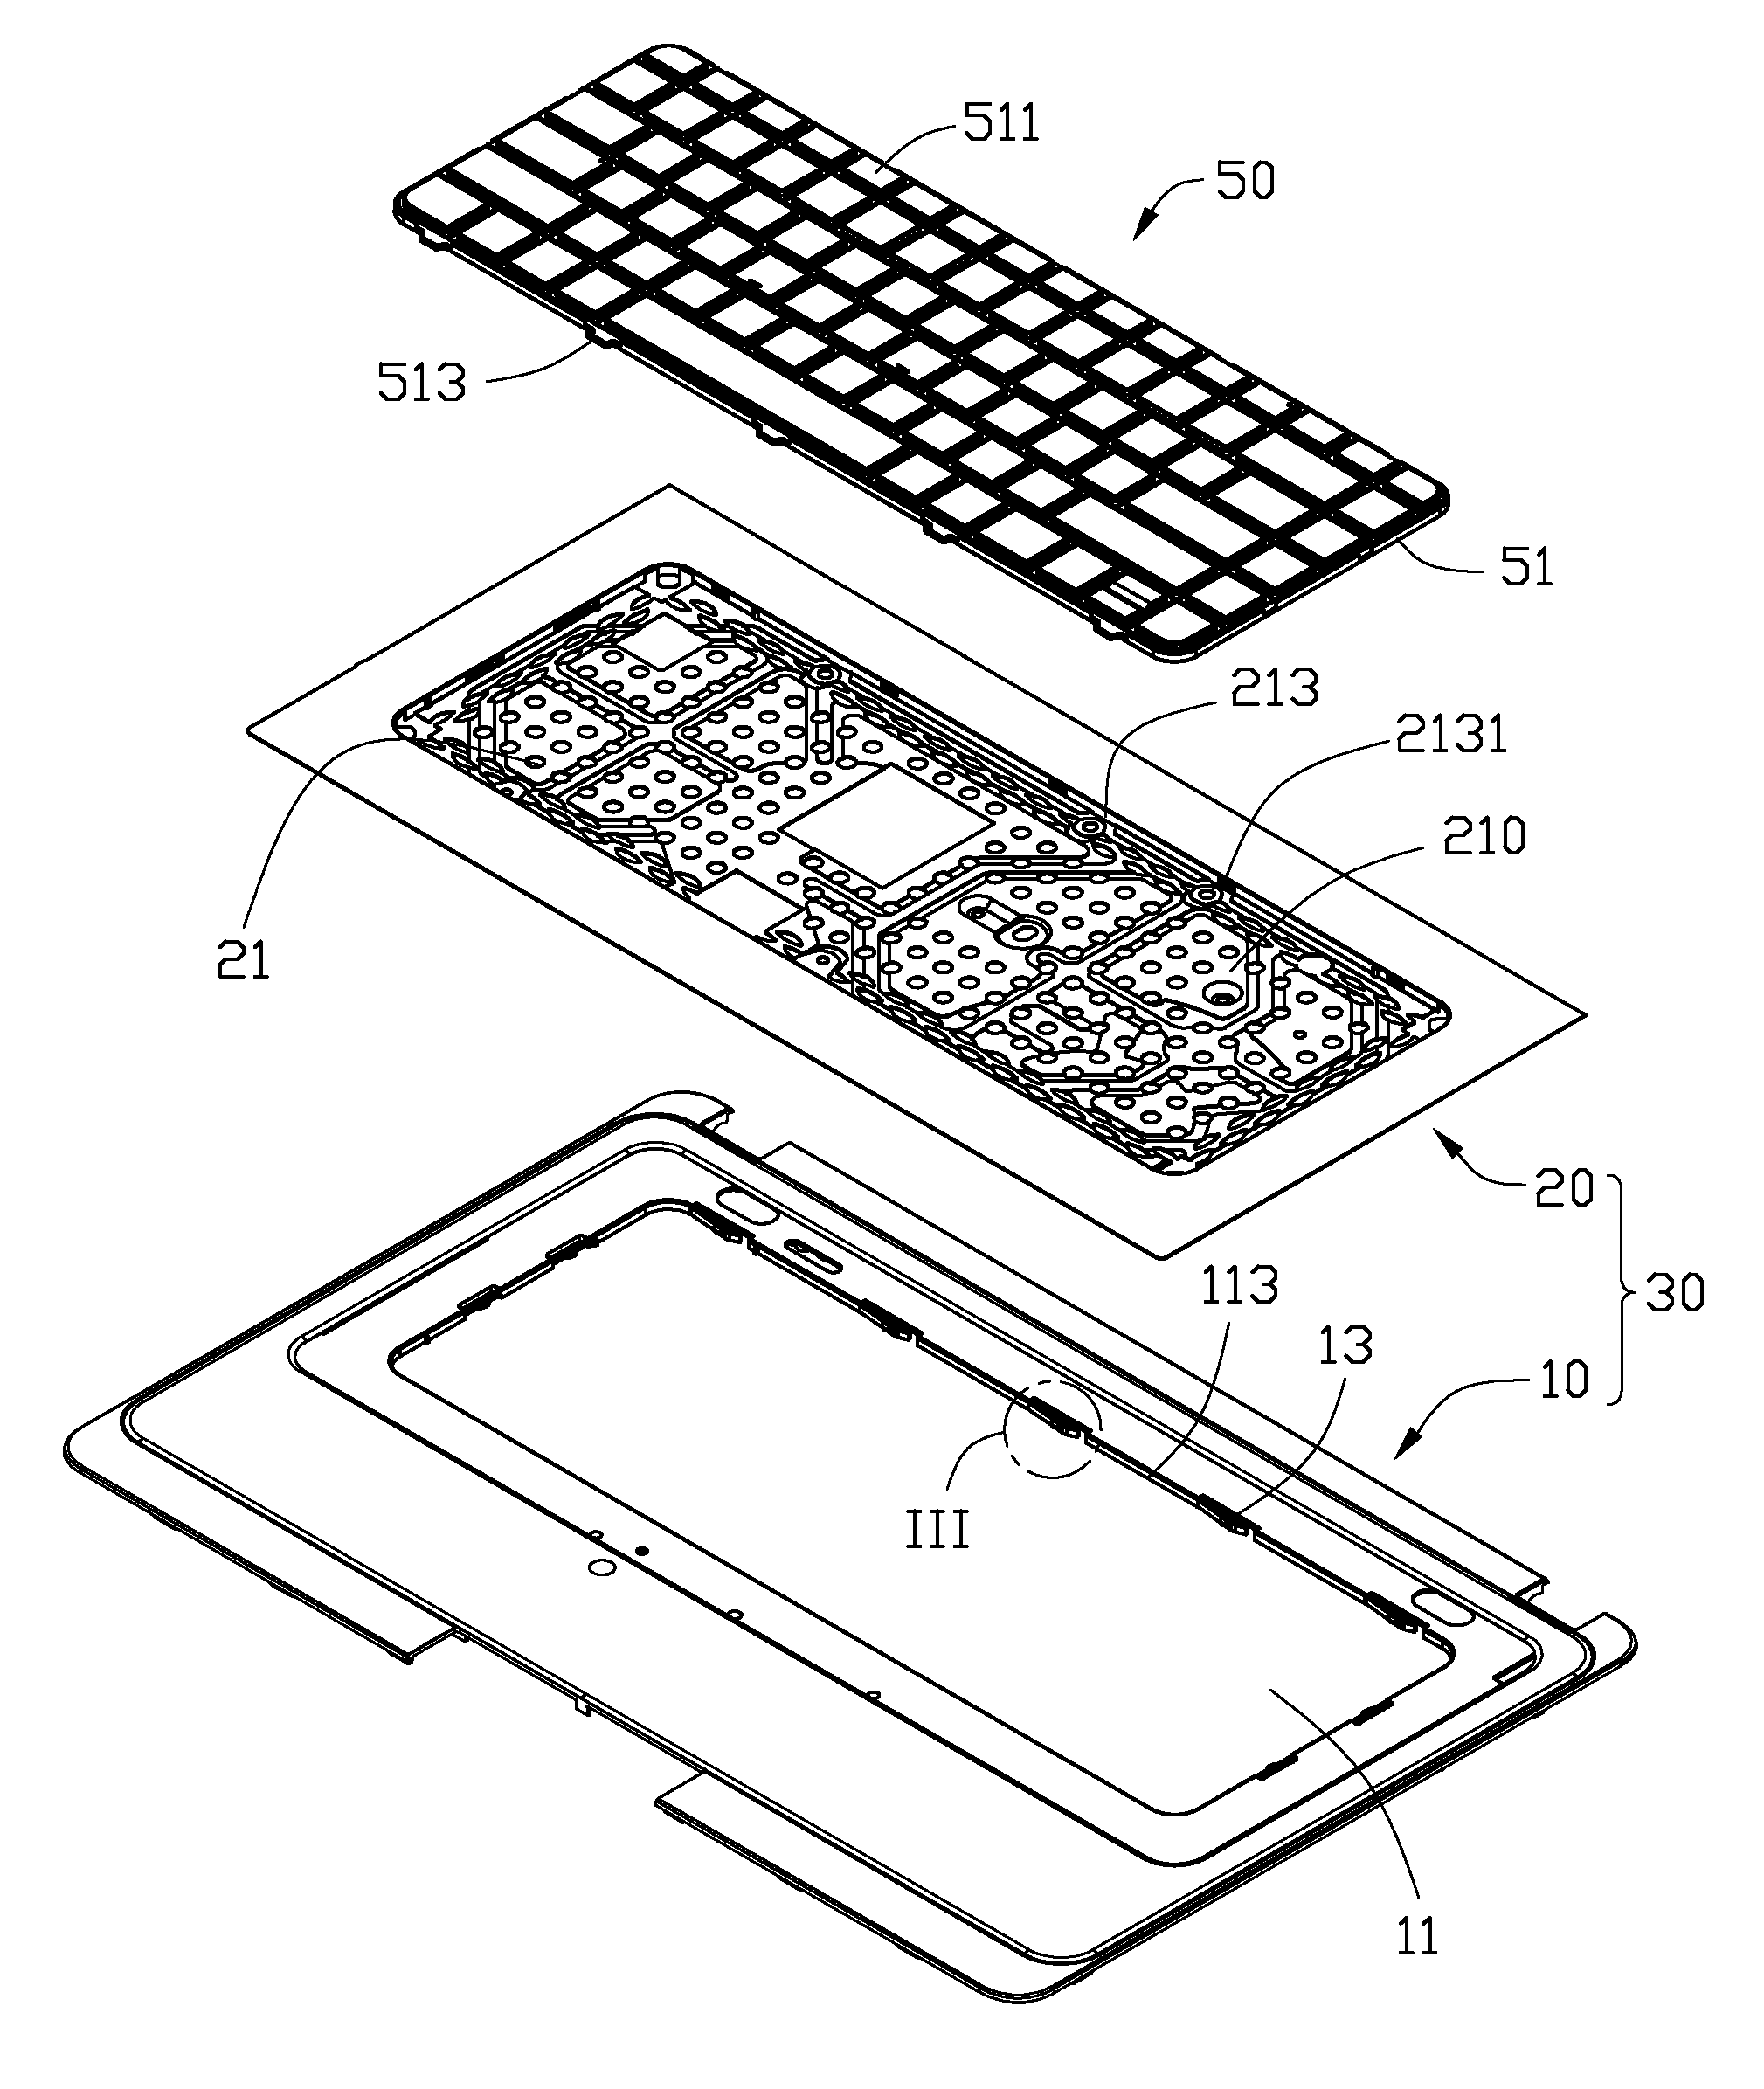 Keyboard mounting apparatus